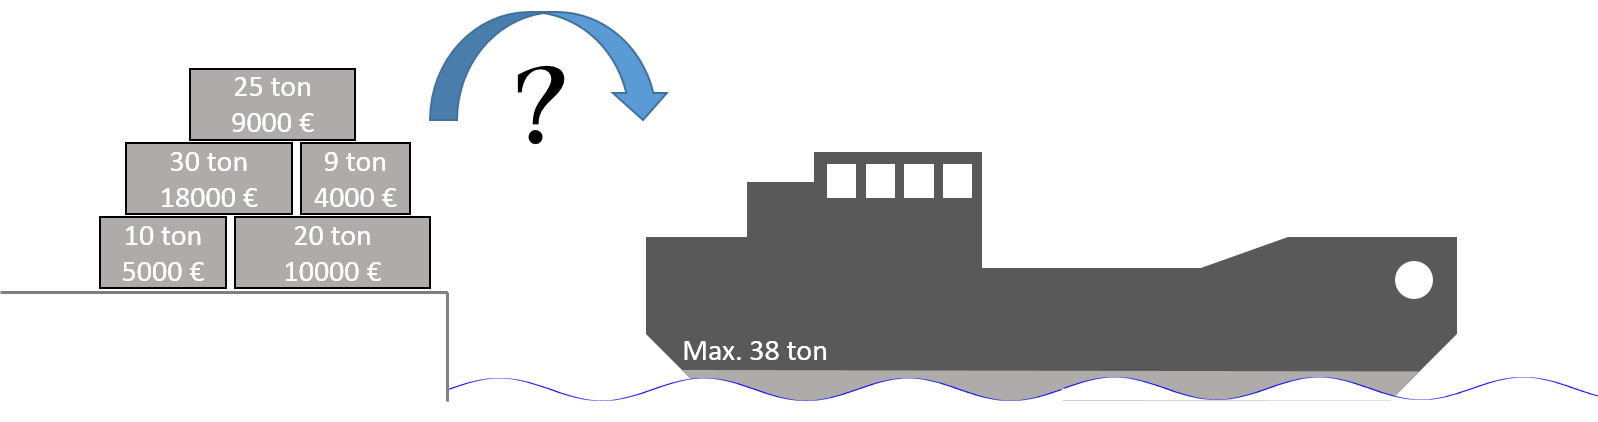 Vraag 3 (Aanbevolen tijd: 40 min.) Je werkt voor een cargoschipbedrijf die containers vervoert over de Atlantische Oceaan.